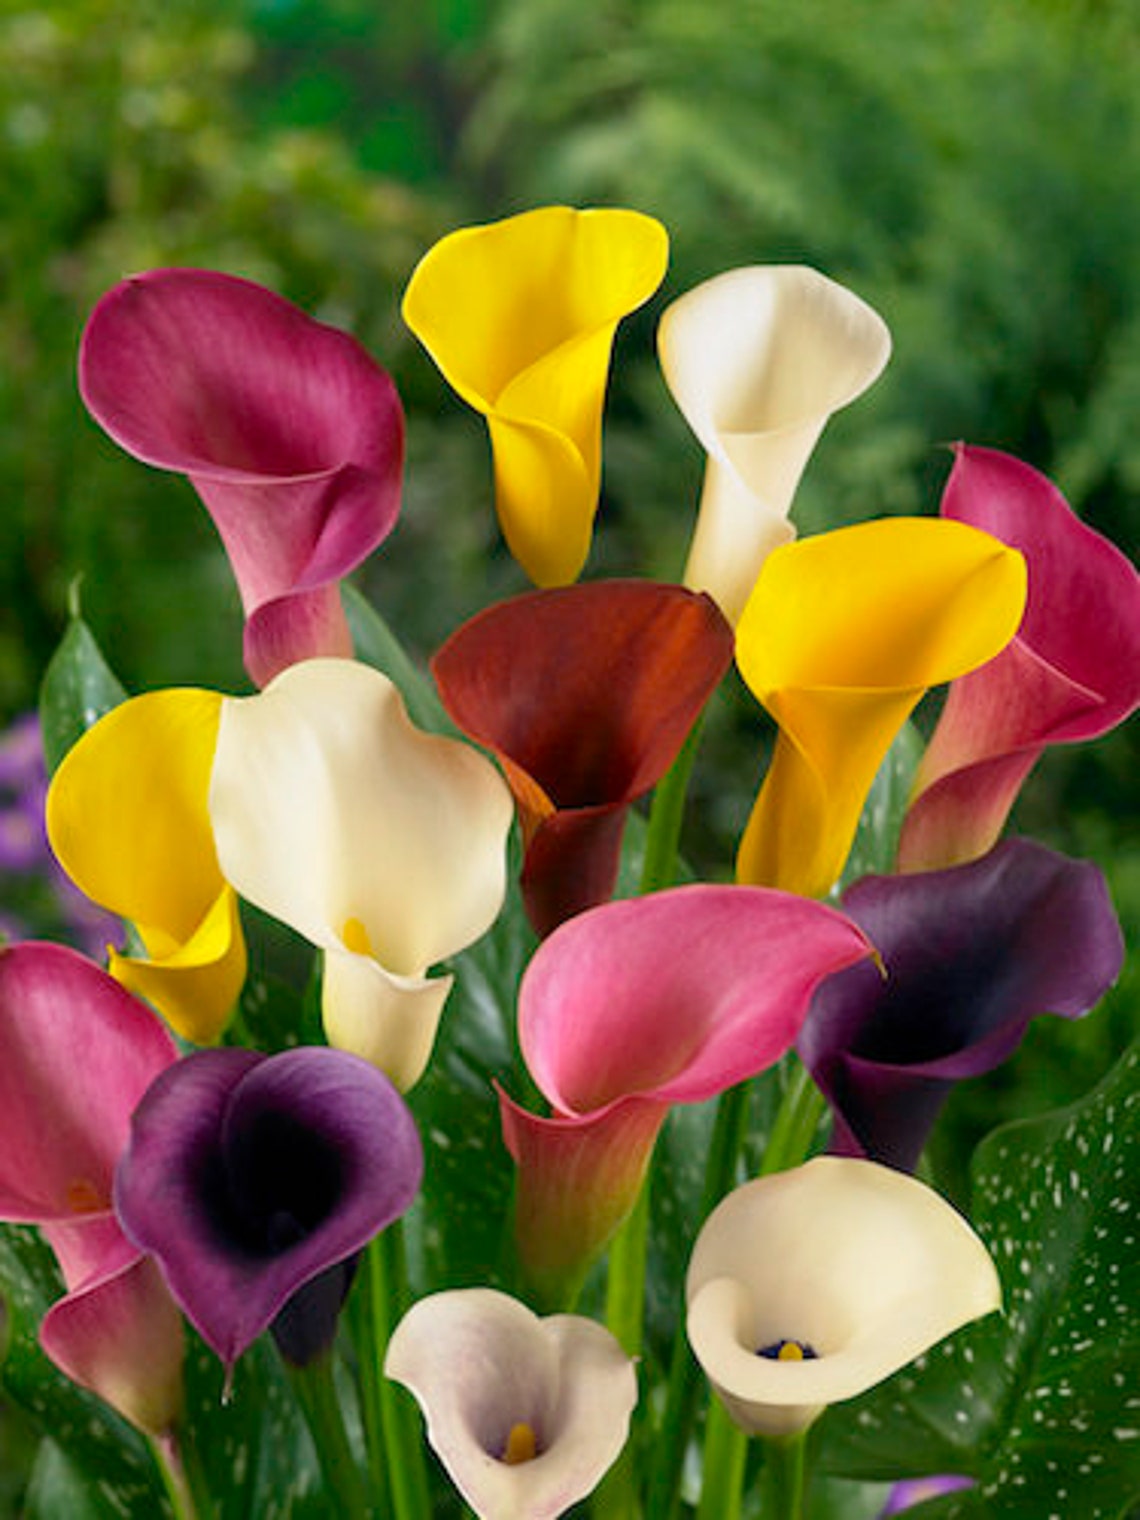 Calla Lily bulbs/rhizomes mixed colors Zantedeschia Arum | Etsy